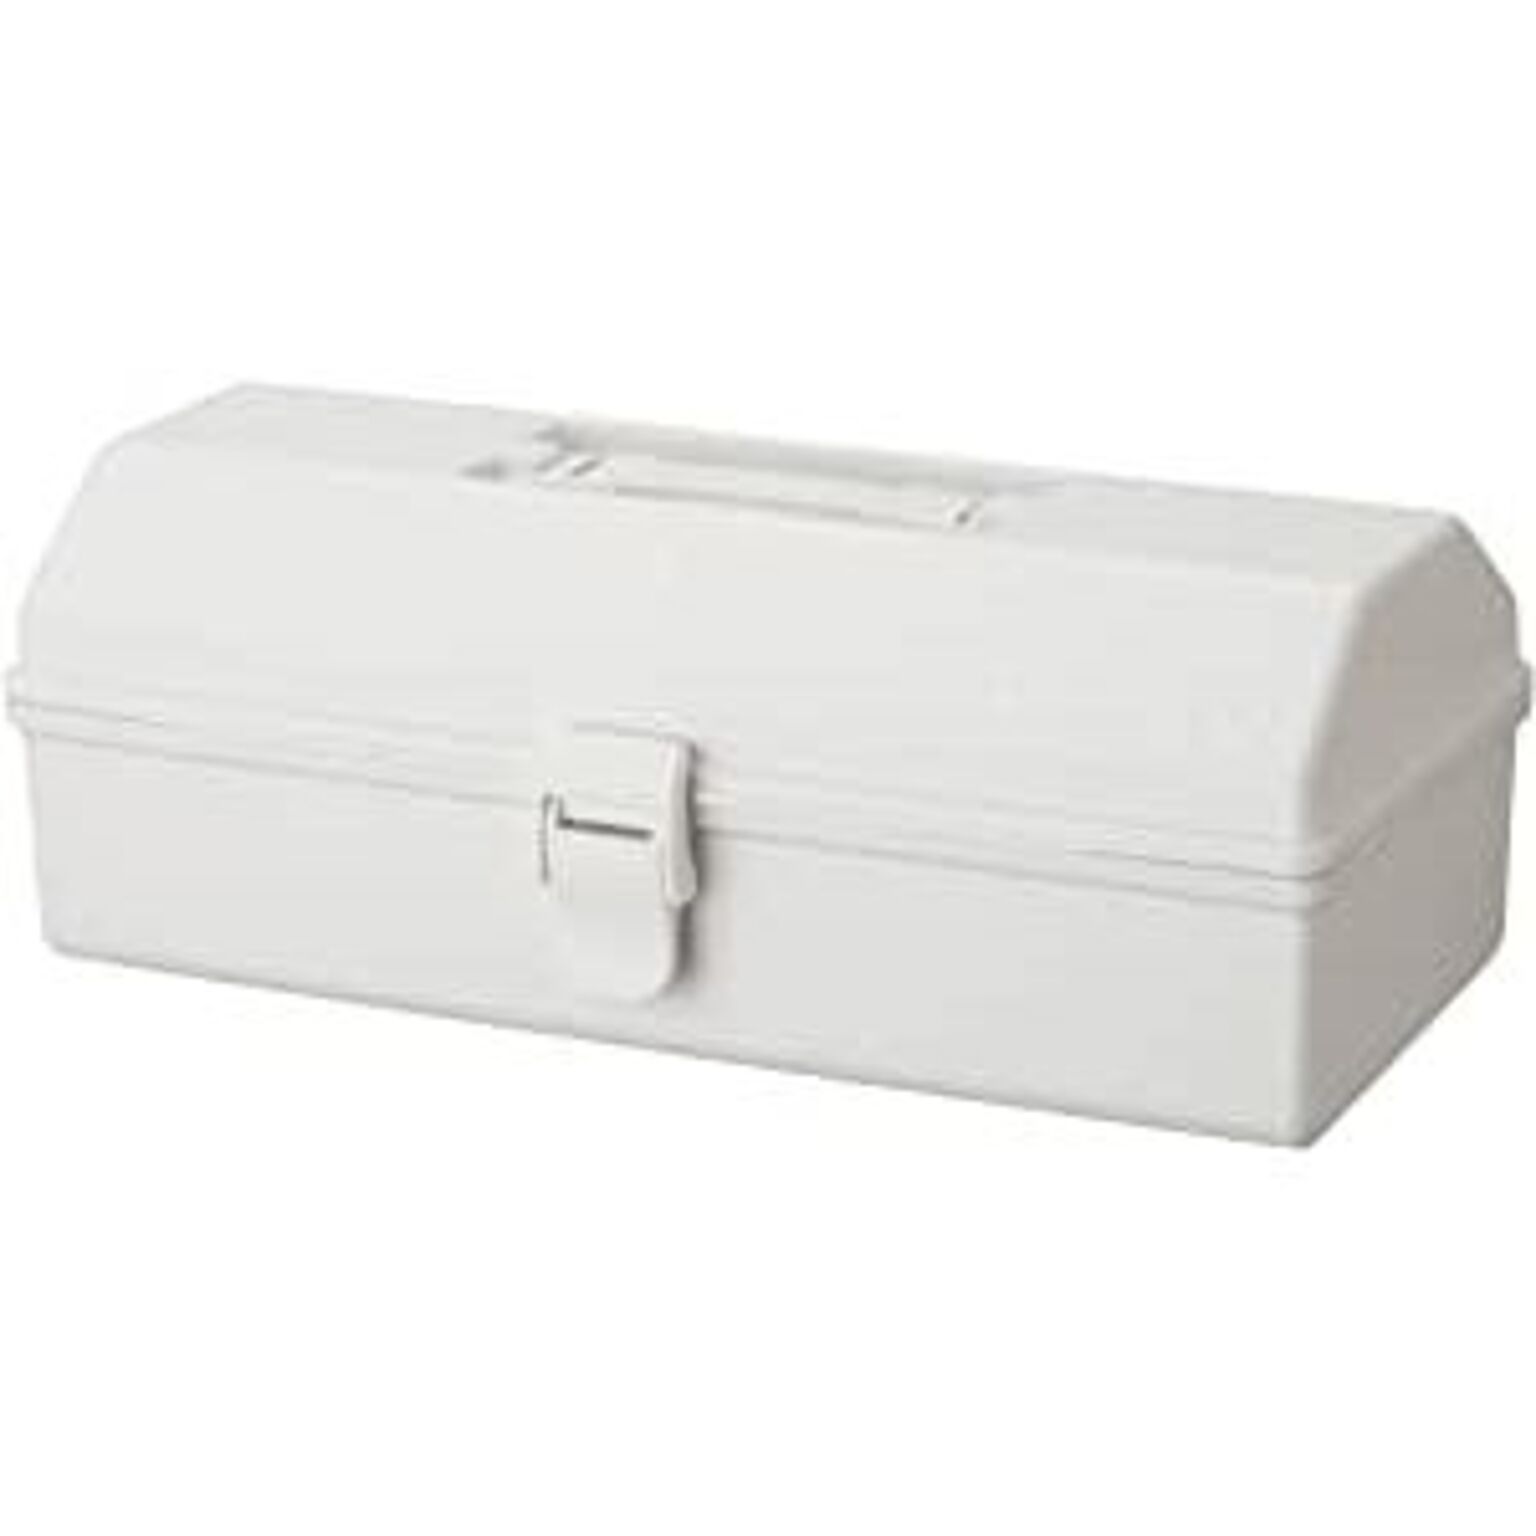 収納ボックス 収納ケース 約幅38cm L ホワイト プラスチック製 ハコット リビング 日用雑貨 生活用品 DIY